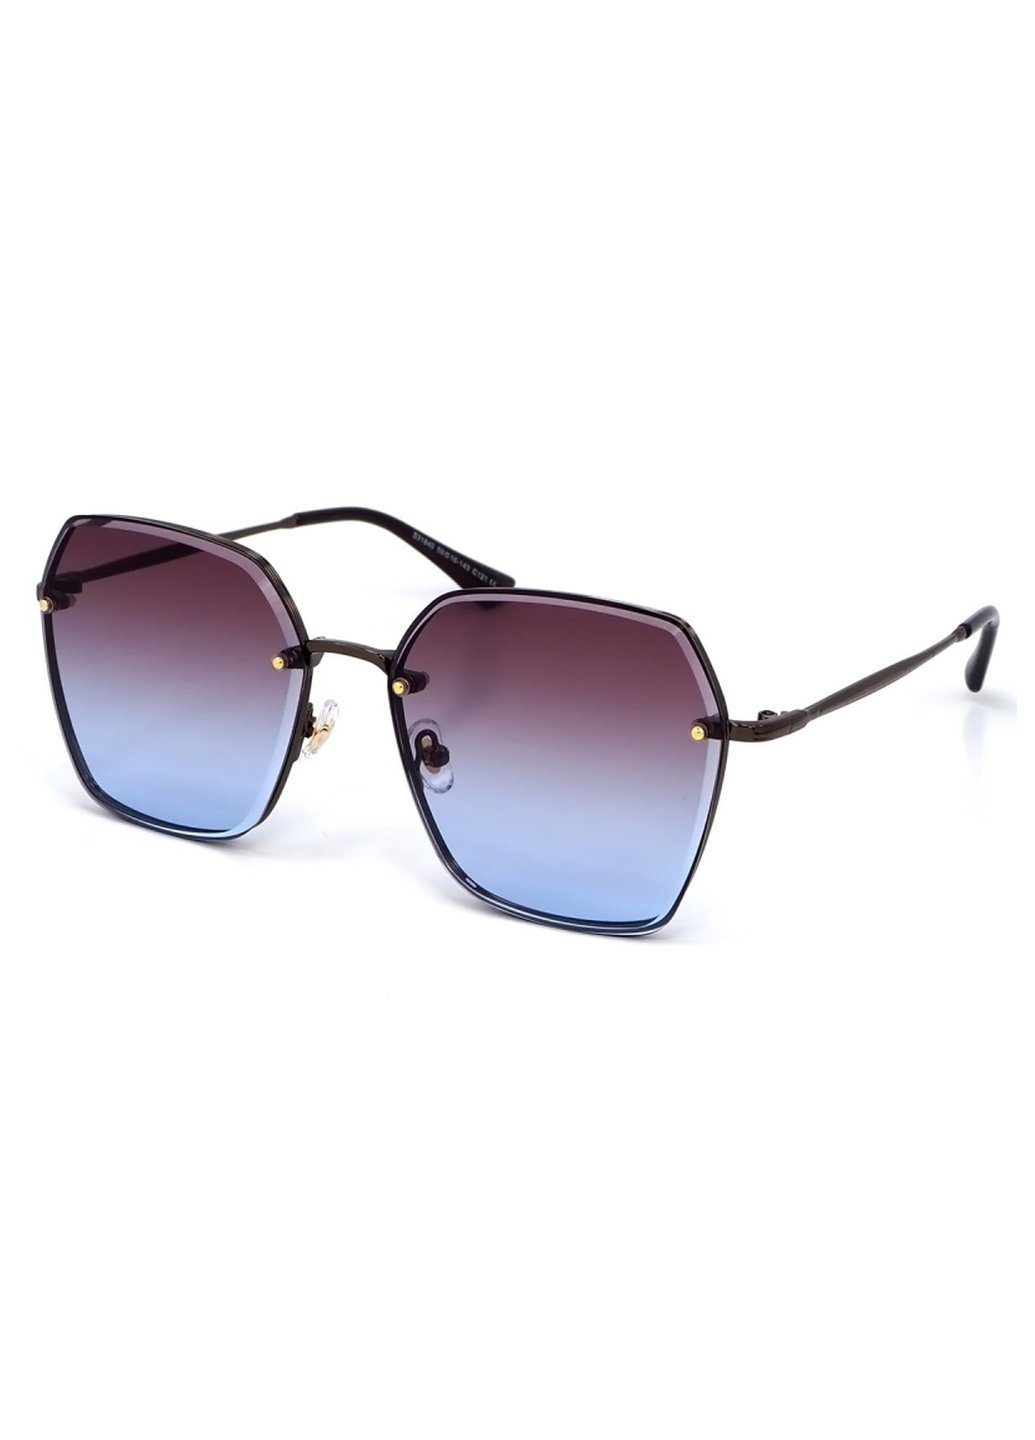 Купить Женские солнцезащитные очки Merlini с поляризацией S31840 117113 - Золотистый в интернет-магазине